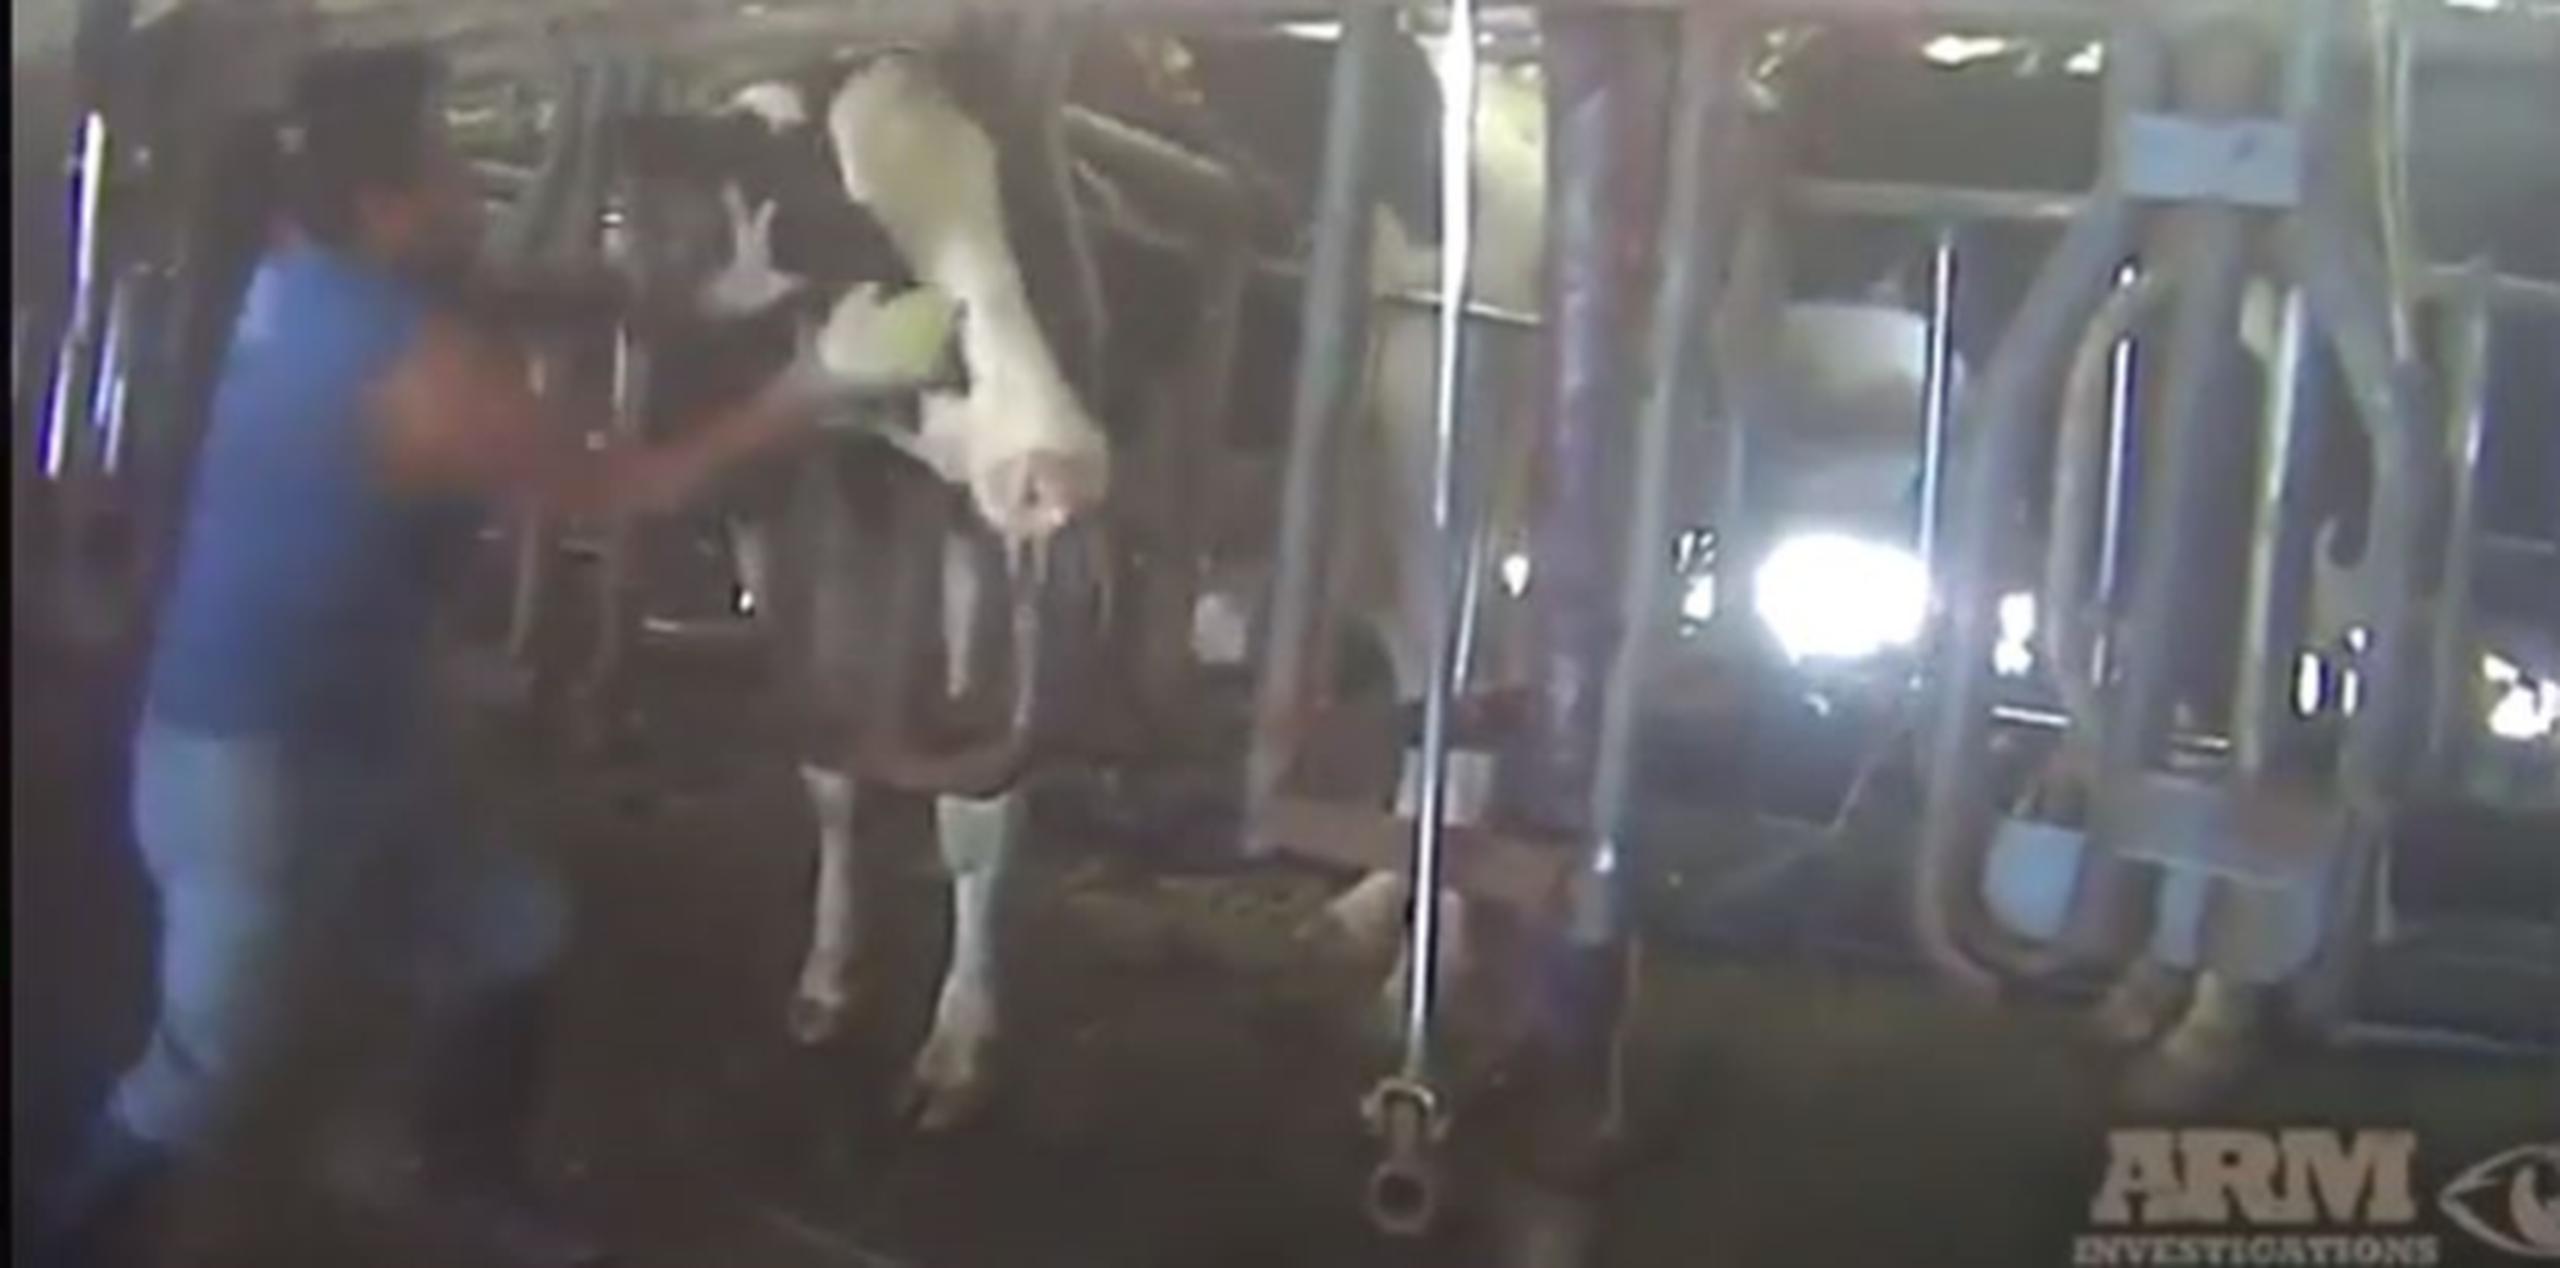 Imágenes muestran a los obreros de la granja sometiendo a las vacas a toda clase de maltratos. (Captura/YouTube)